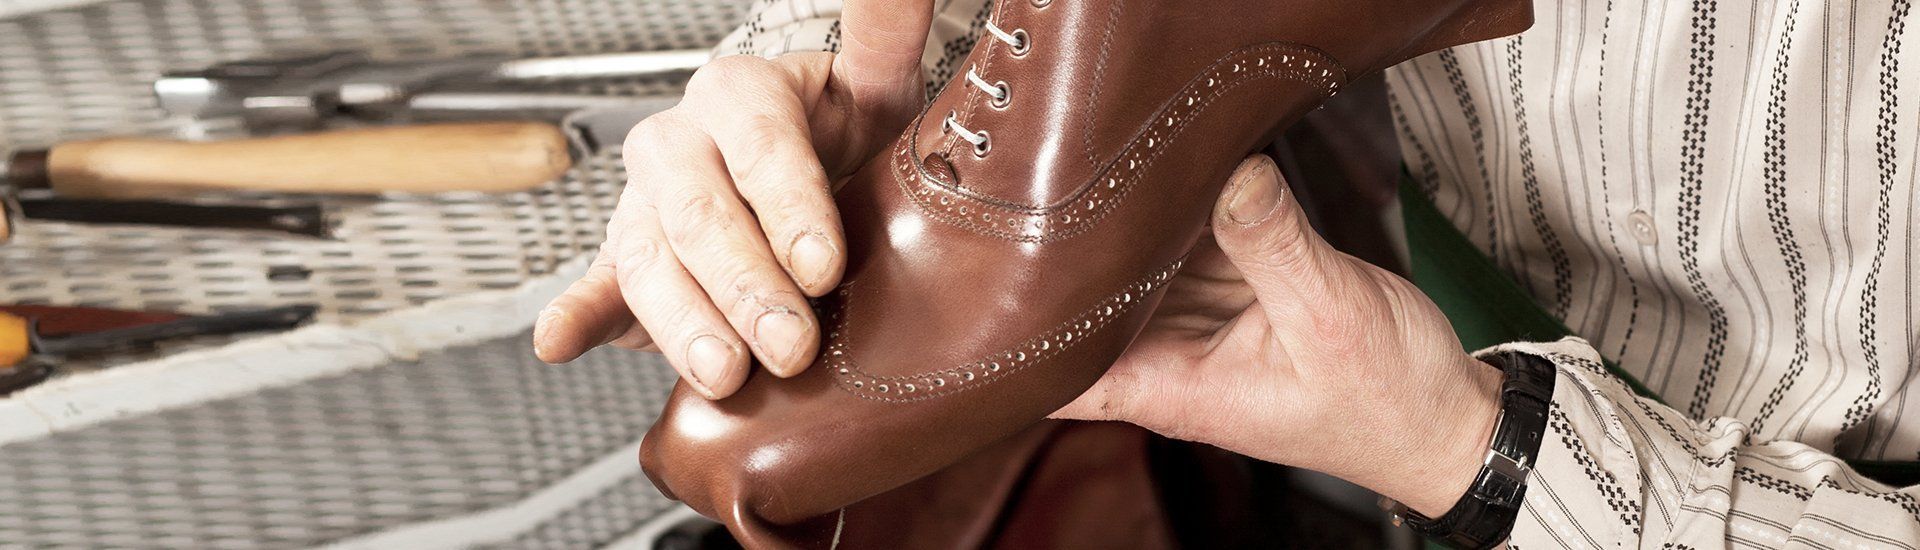  shoe repairs 